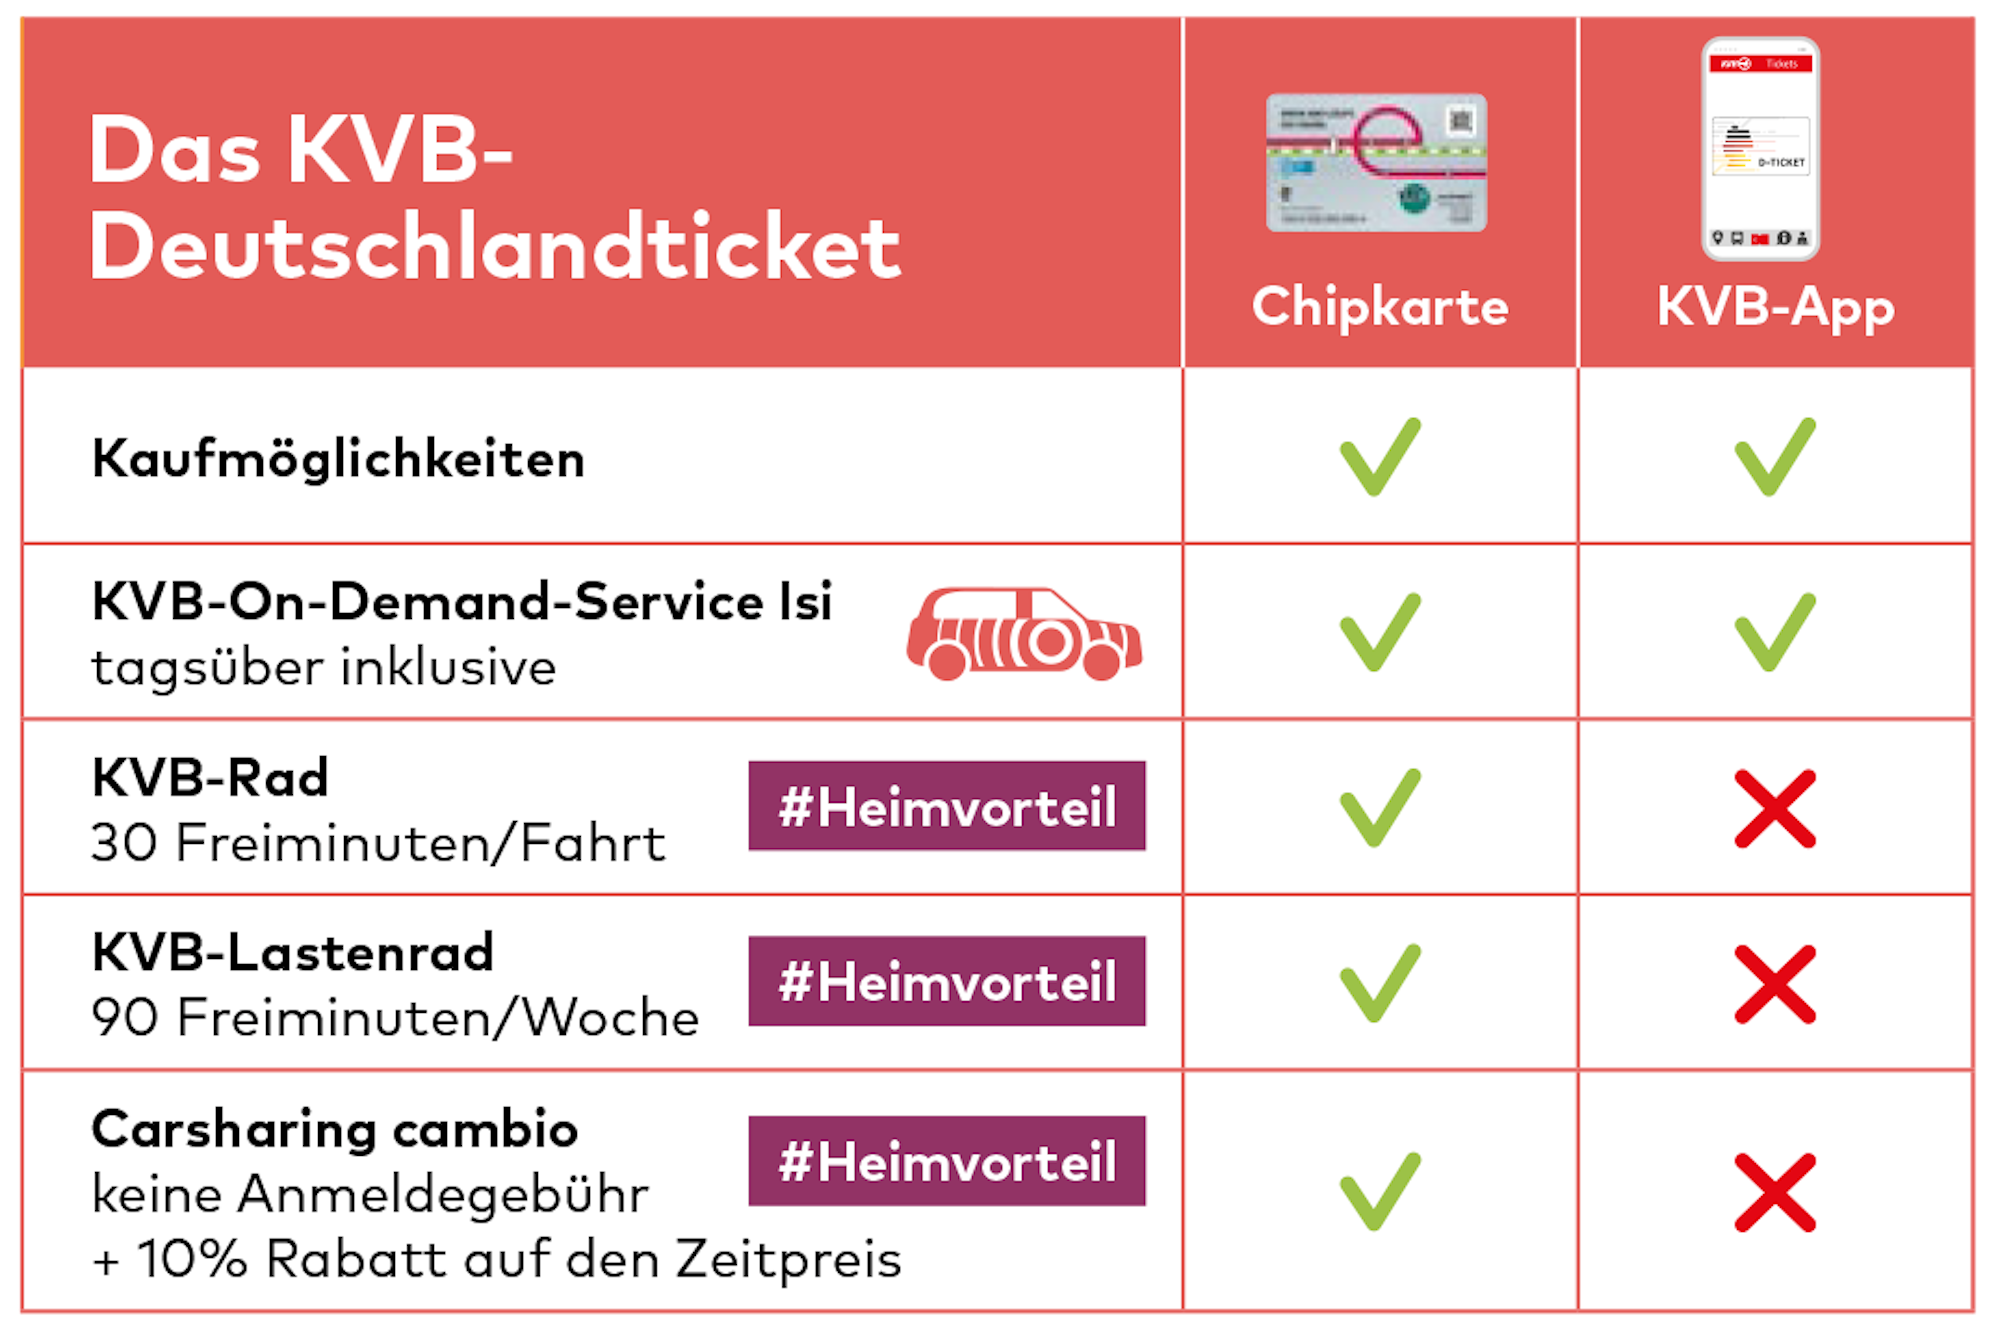 KVB-Deutschlandticket im Vergleich